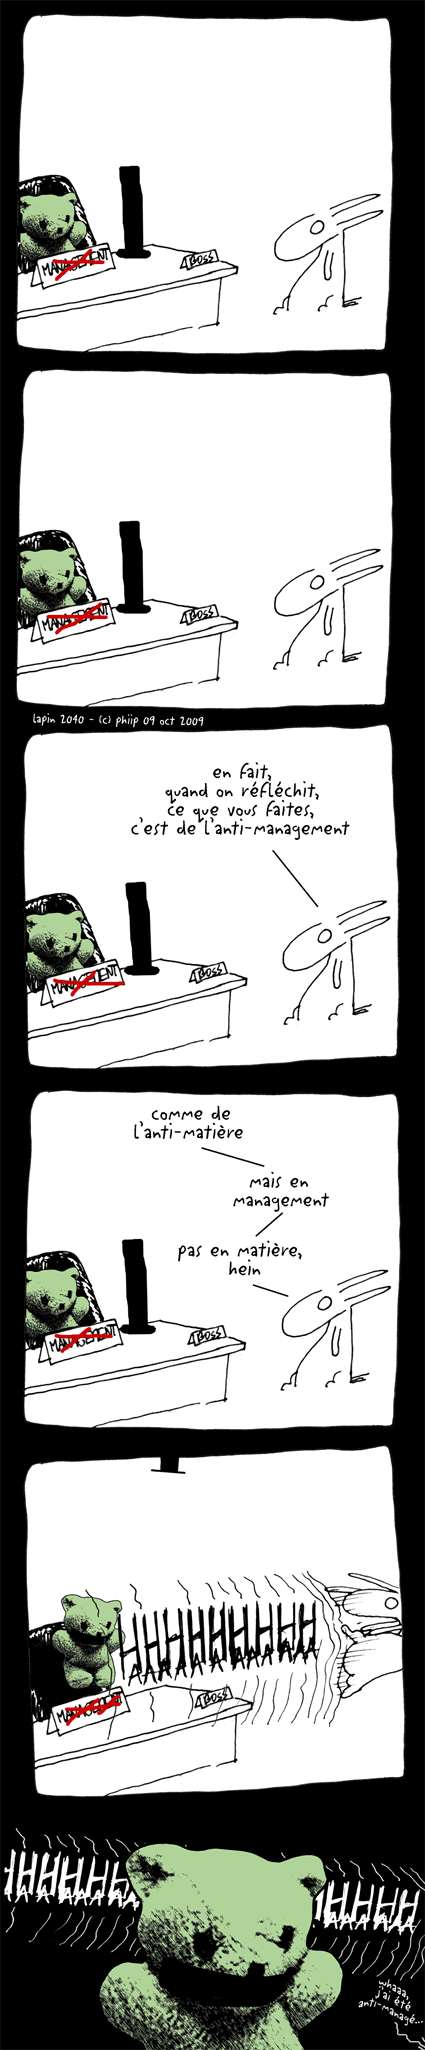 anti-management